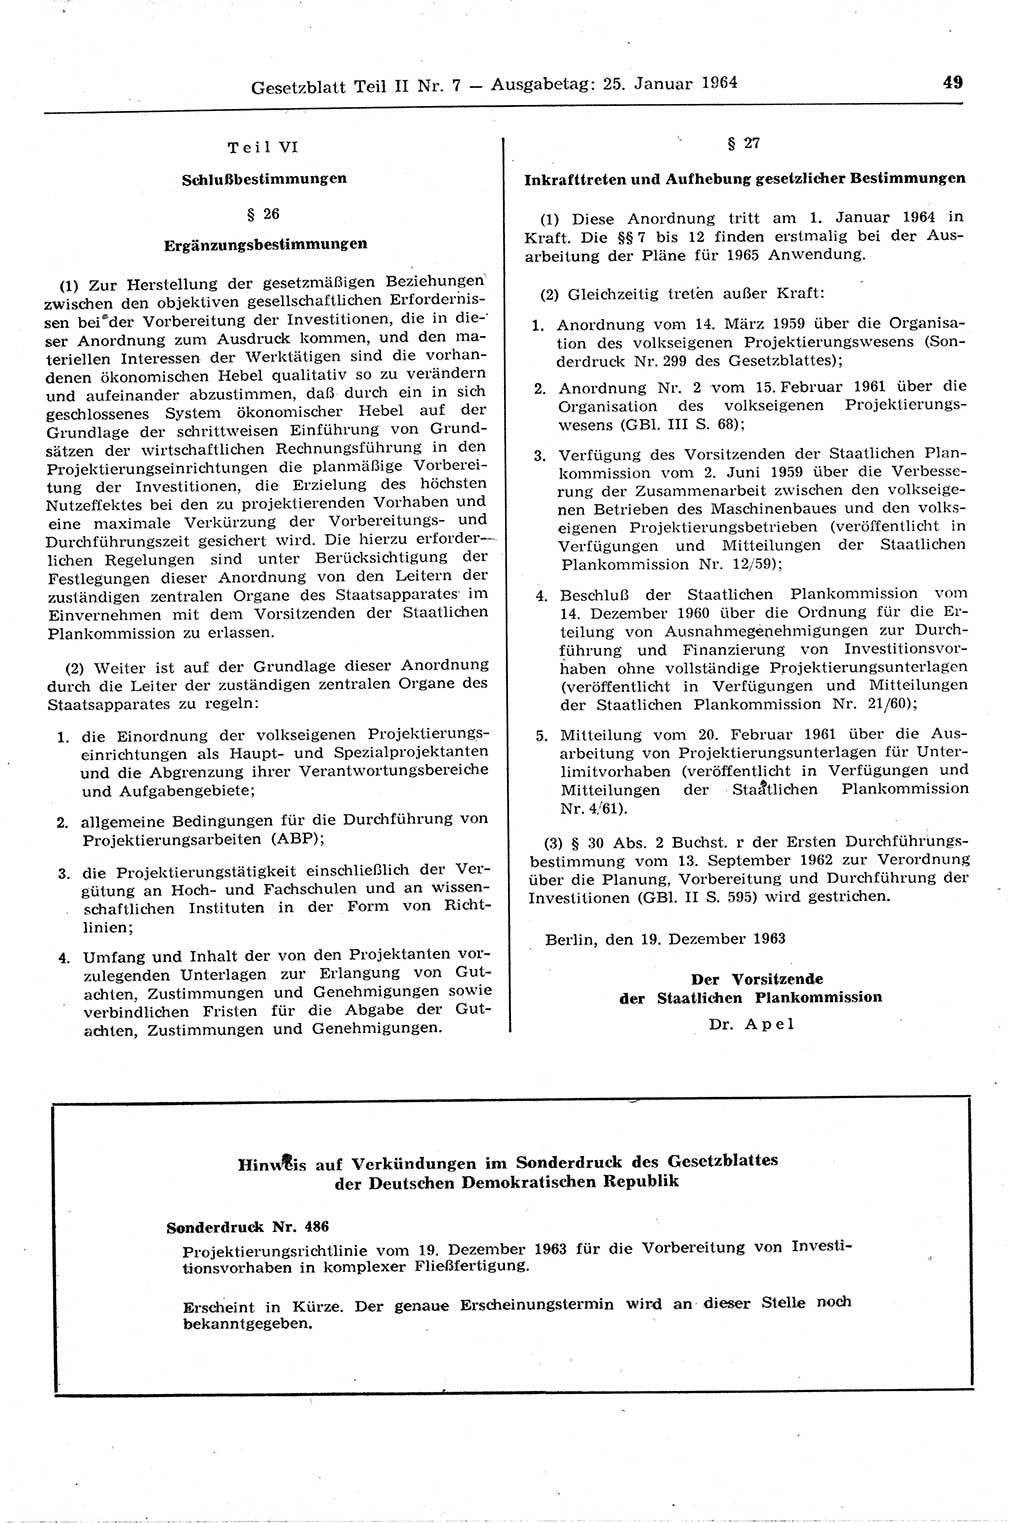 Gesetzblatt (GBl.) der Deutschen Demokratischen Republik (DDR) Teil ⅠⅠ 1964, Seite 49 (GBl. DDR ⅠⅠ 1964, S. 49)